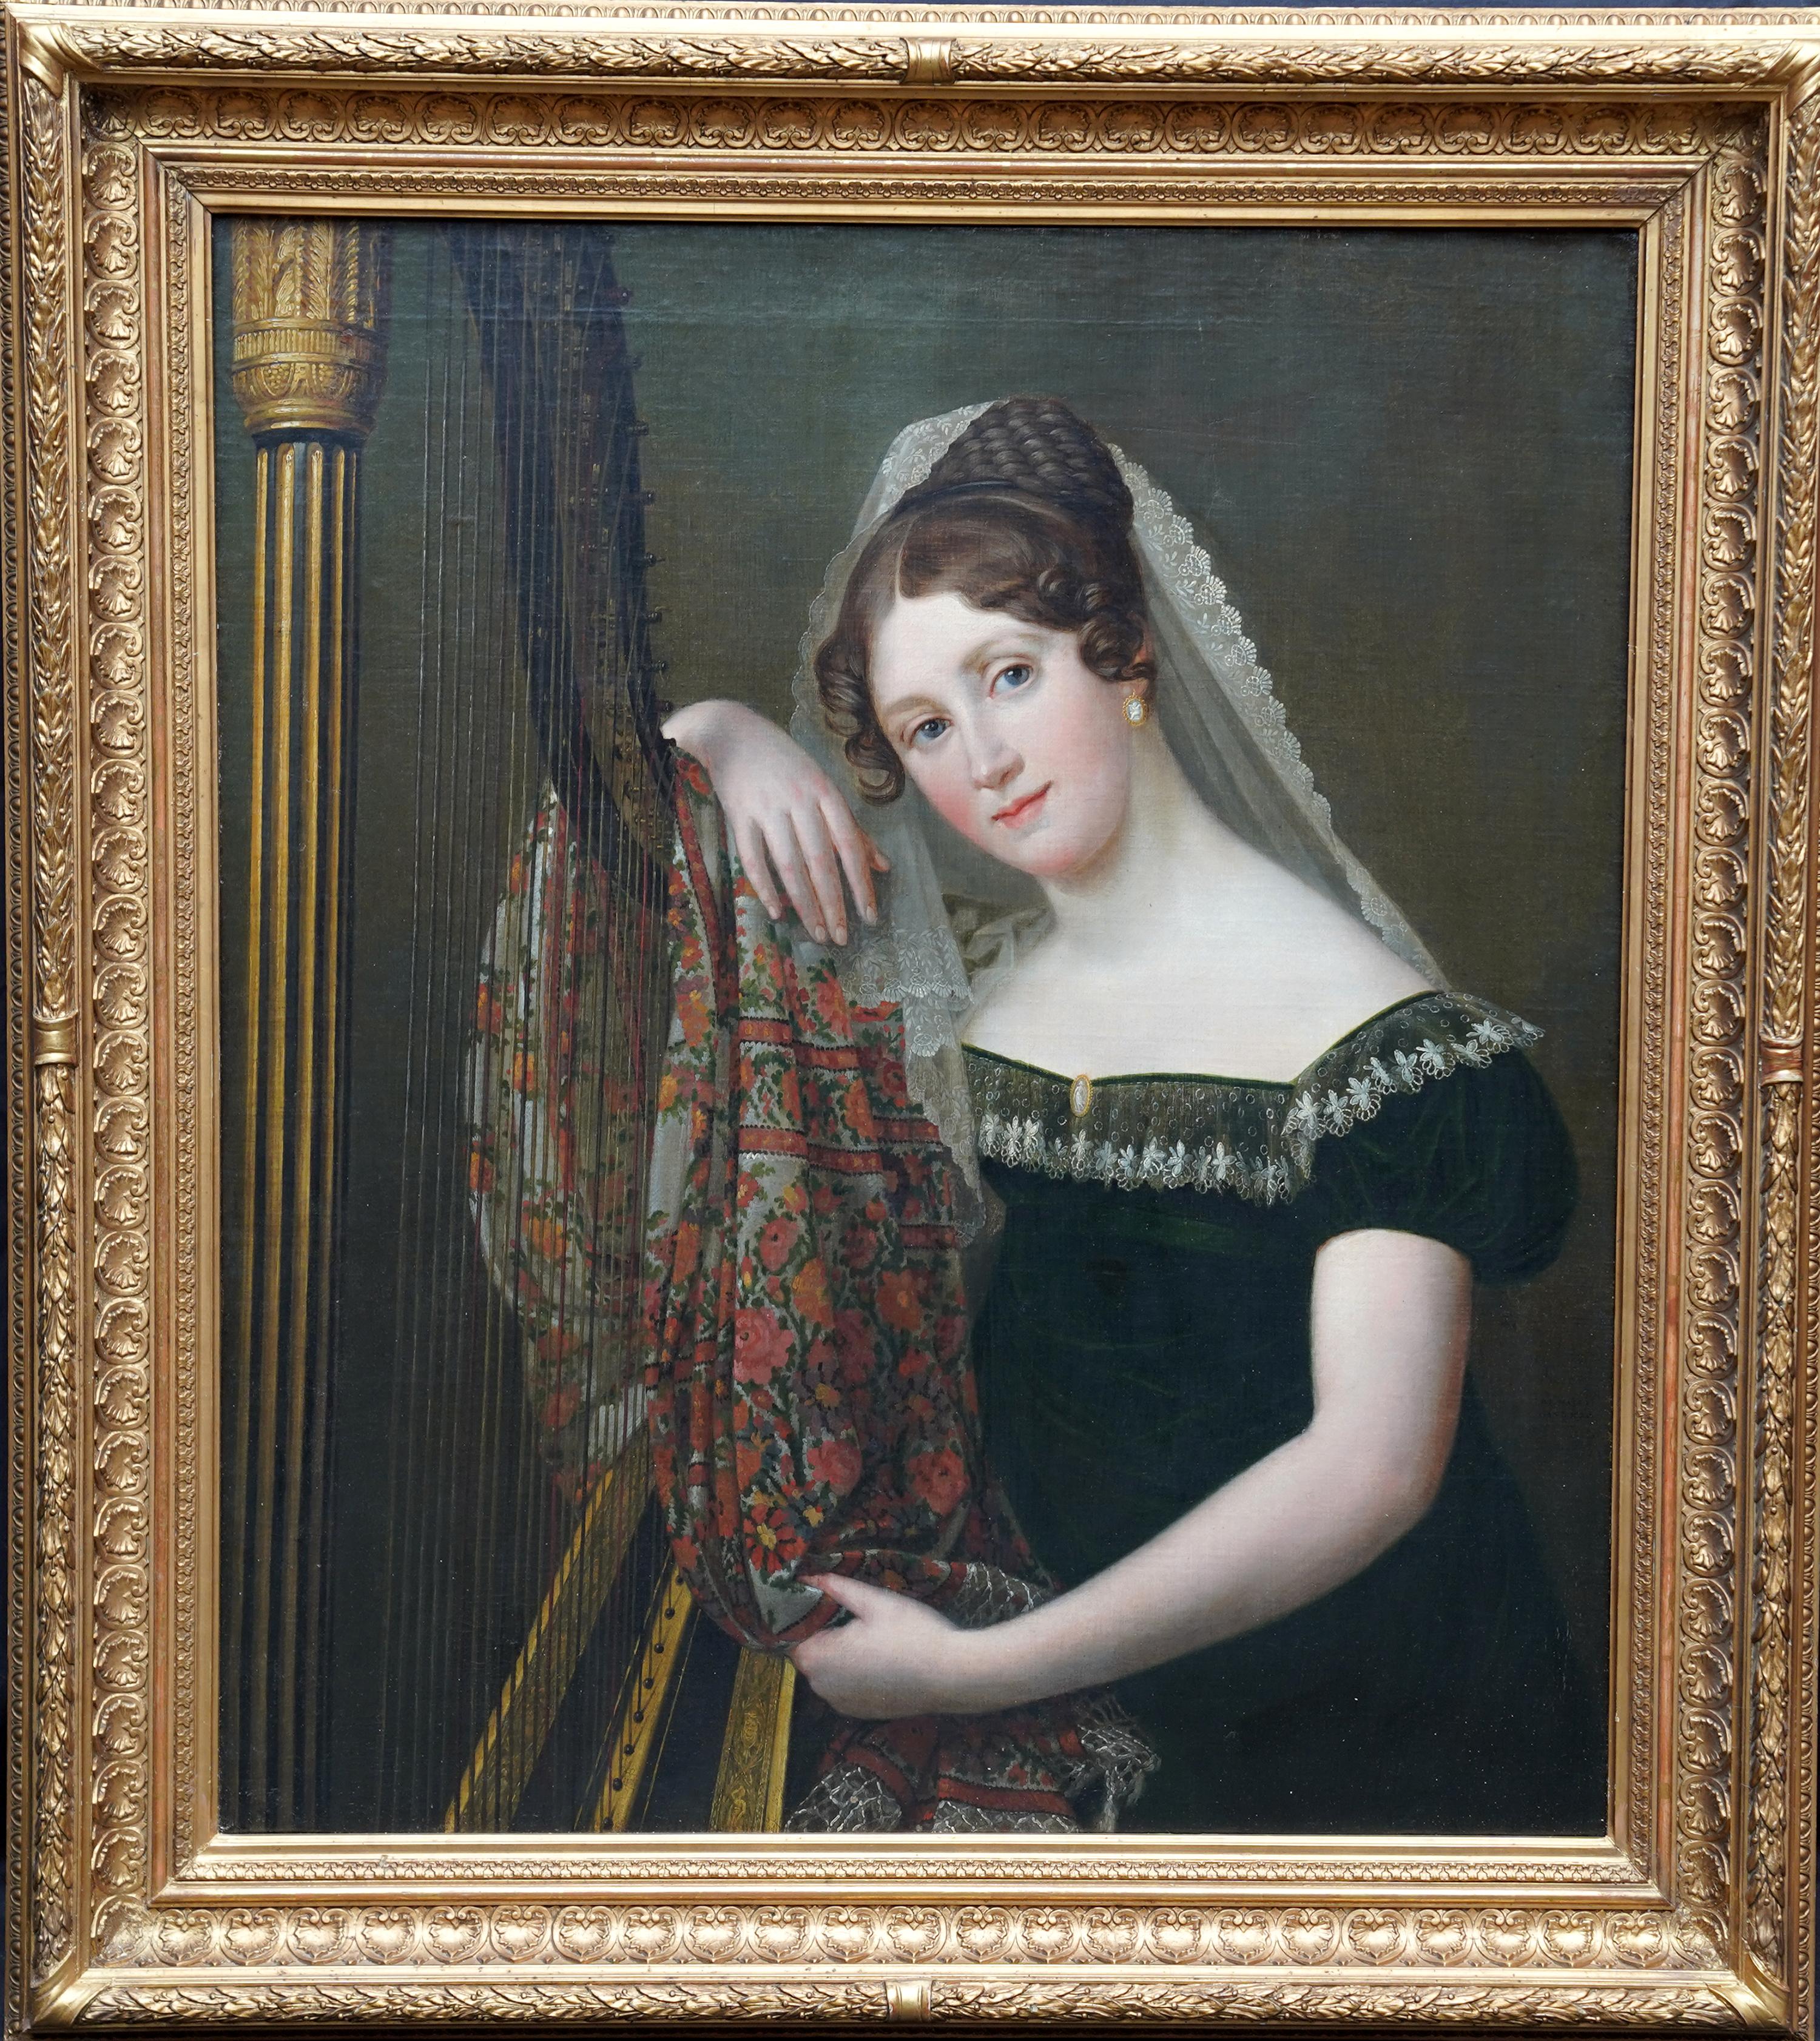 1820s Paintings